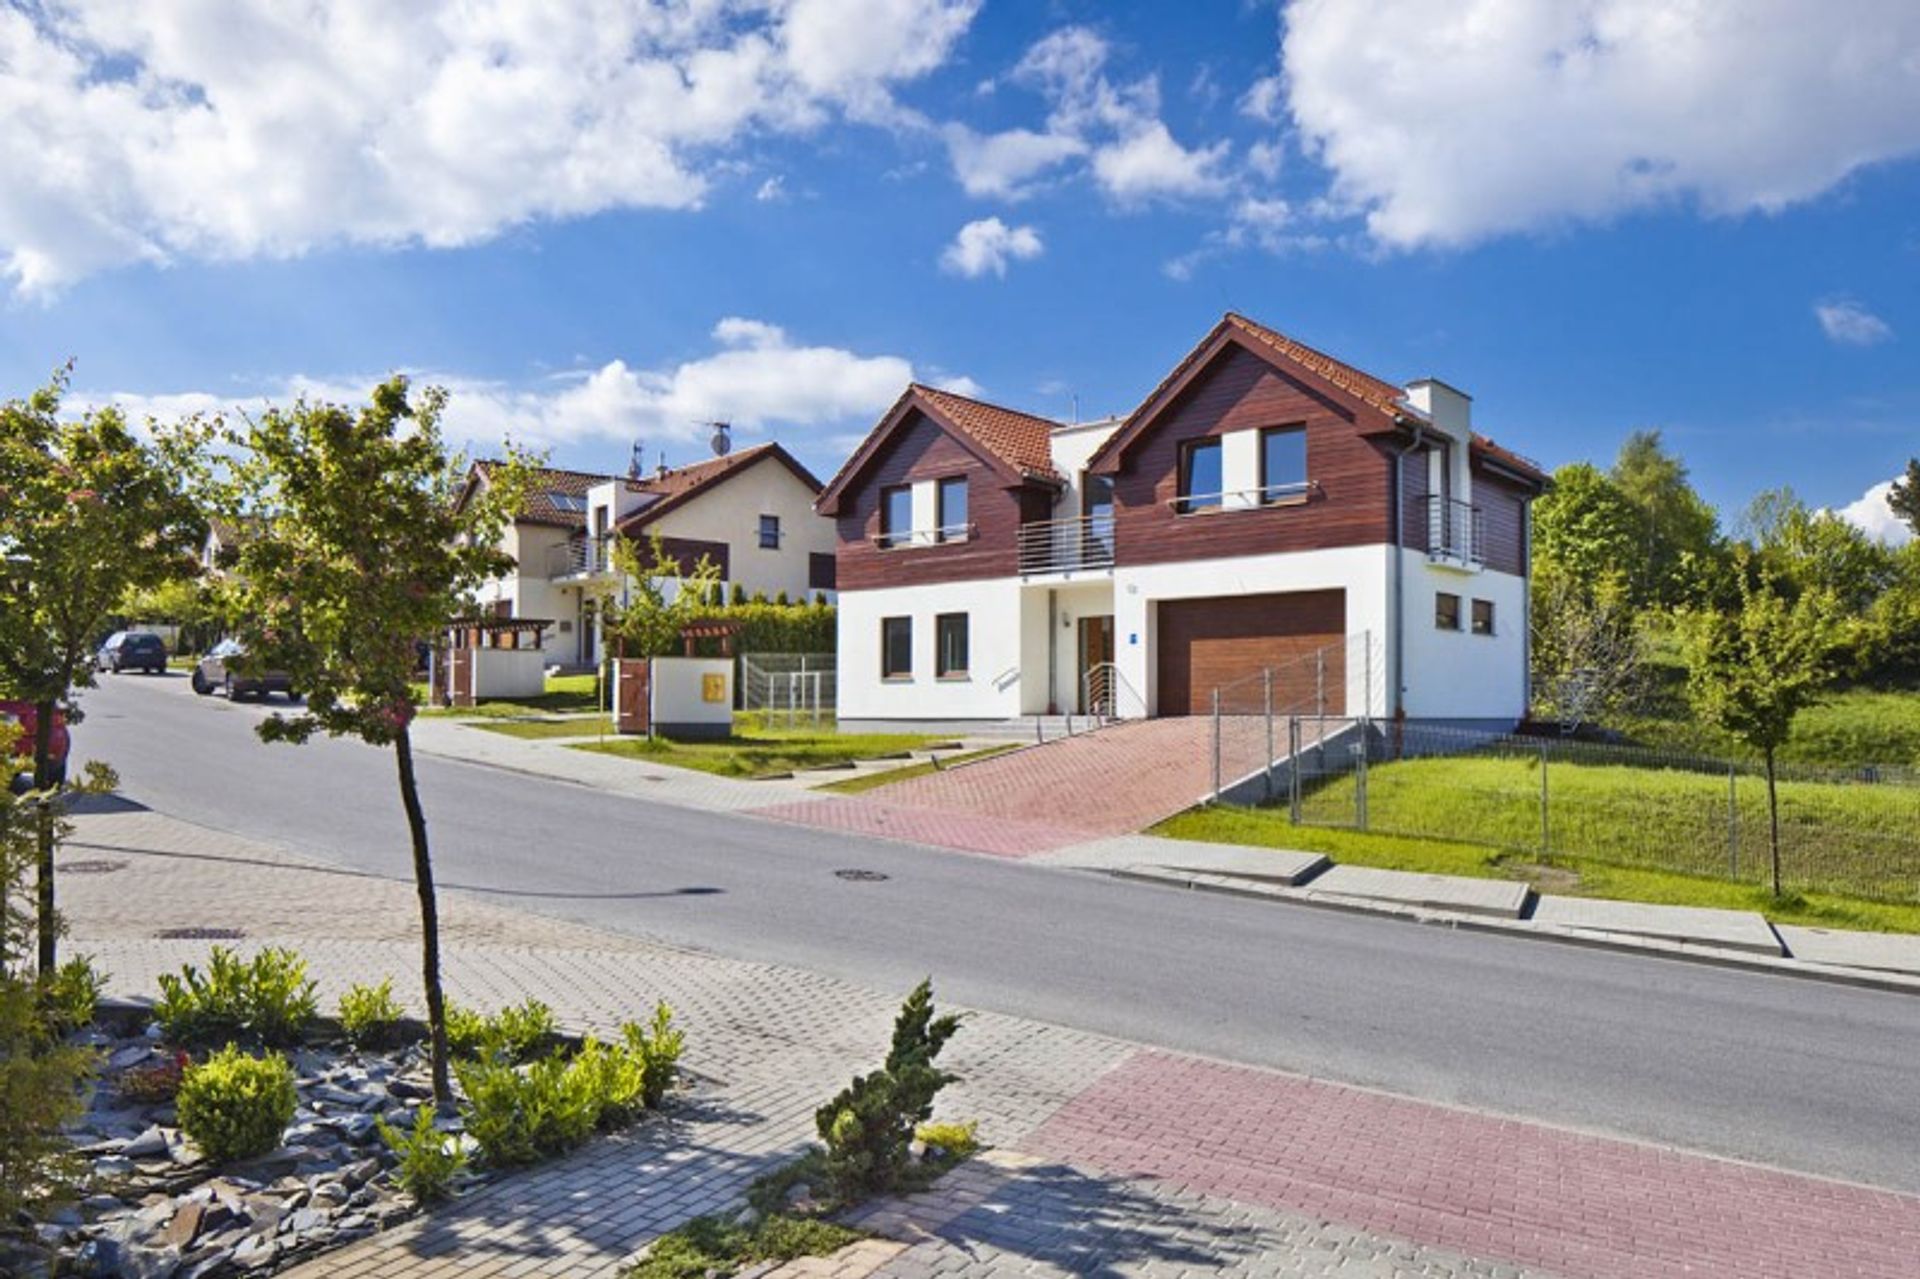  Inpro sprzedało ponad 99% domów na Osiedlu Nowiec